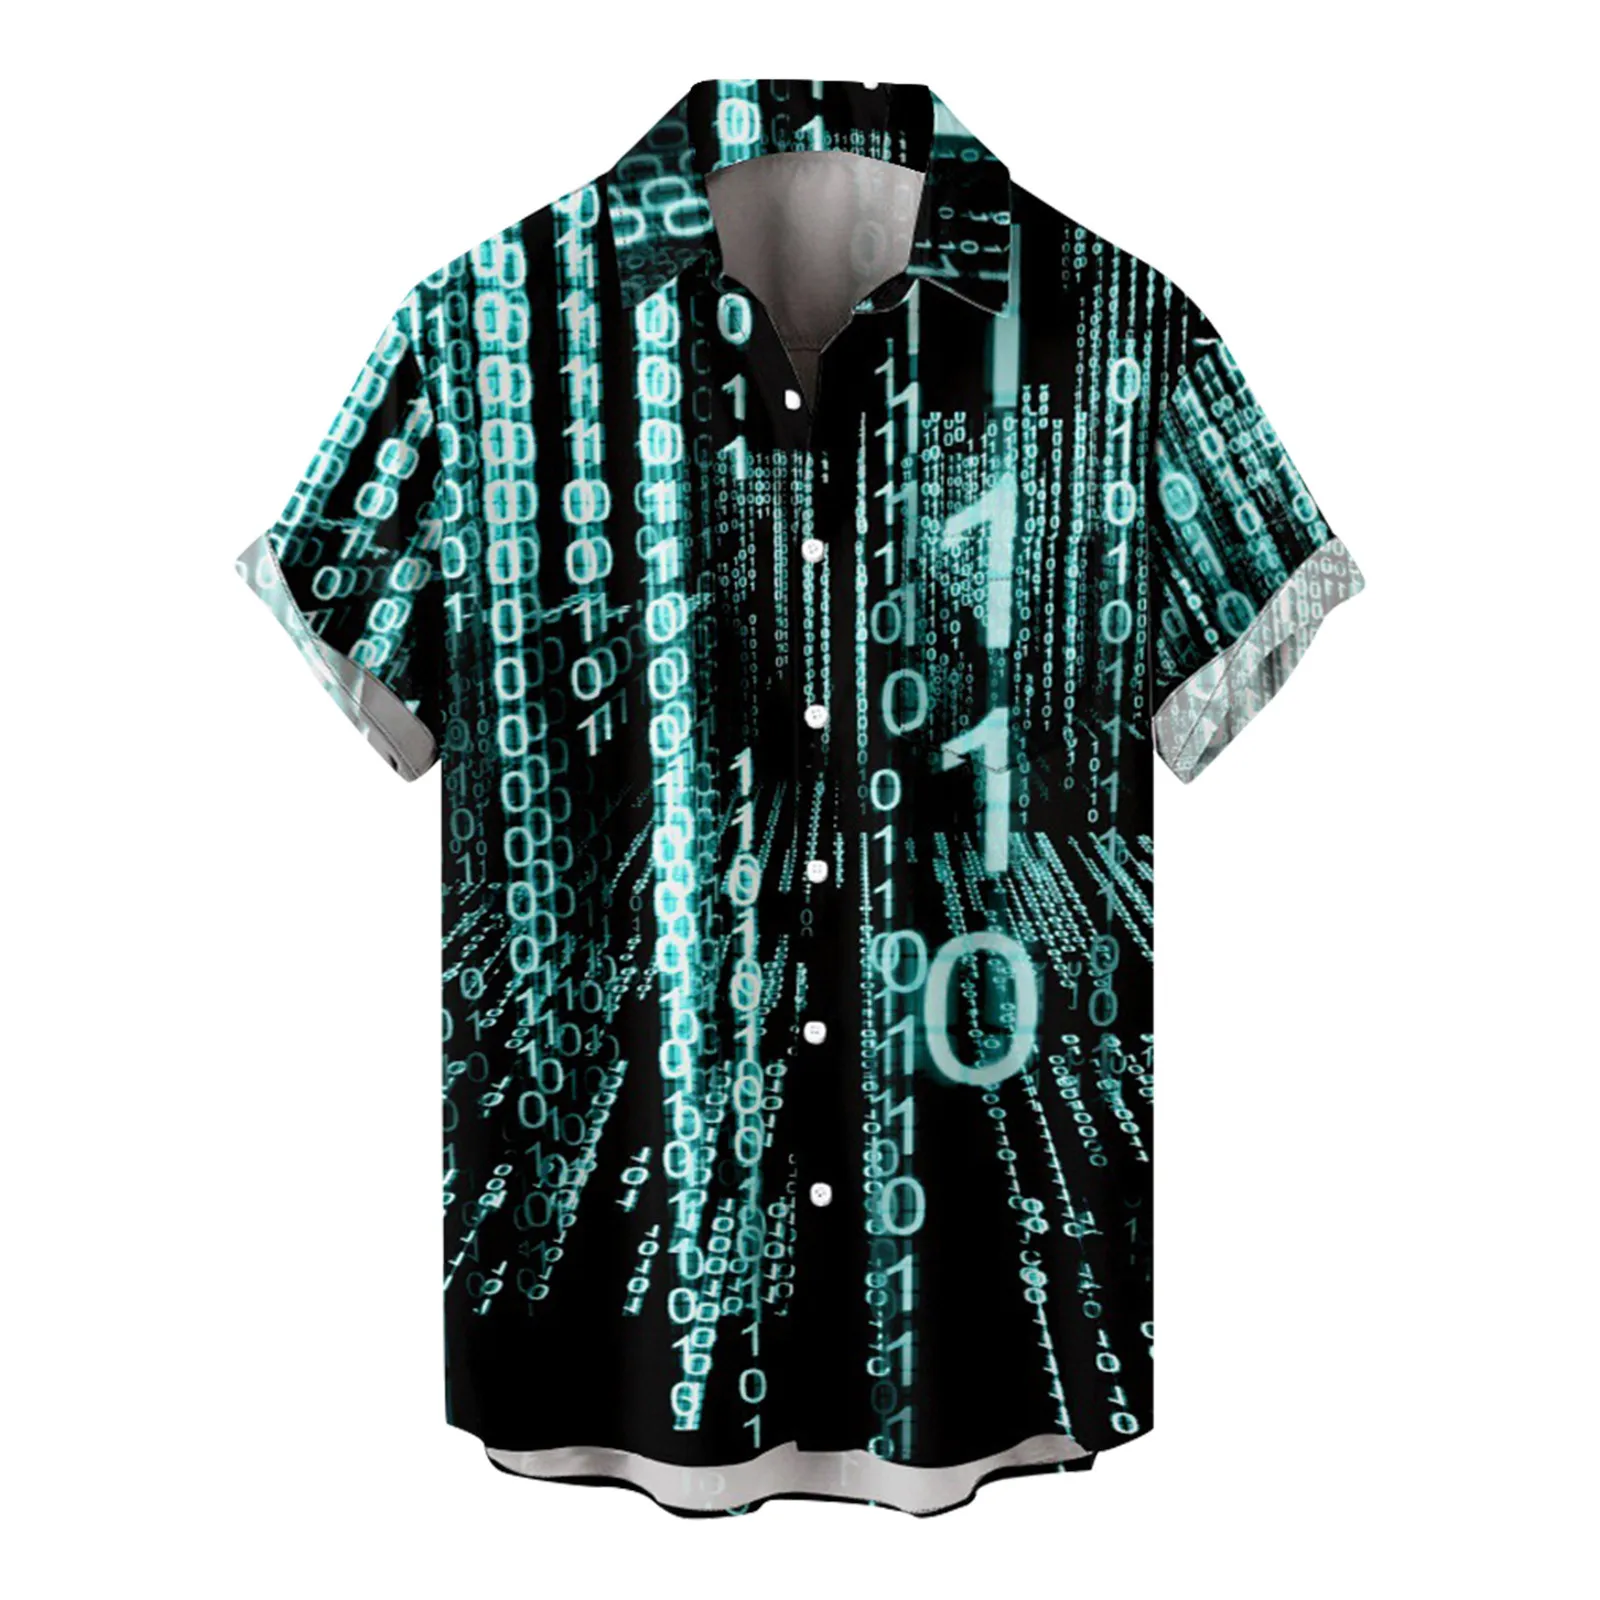 

Гавайская рубашка мужская с коротким рукавом, модная повседневная Пляжная блуза с принтом цифр, яркий цвет, размеры до 4xl